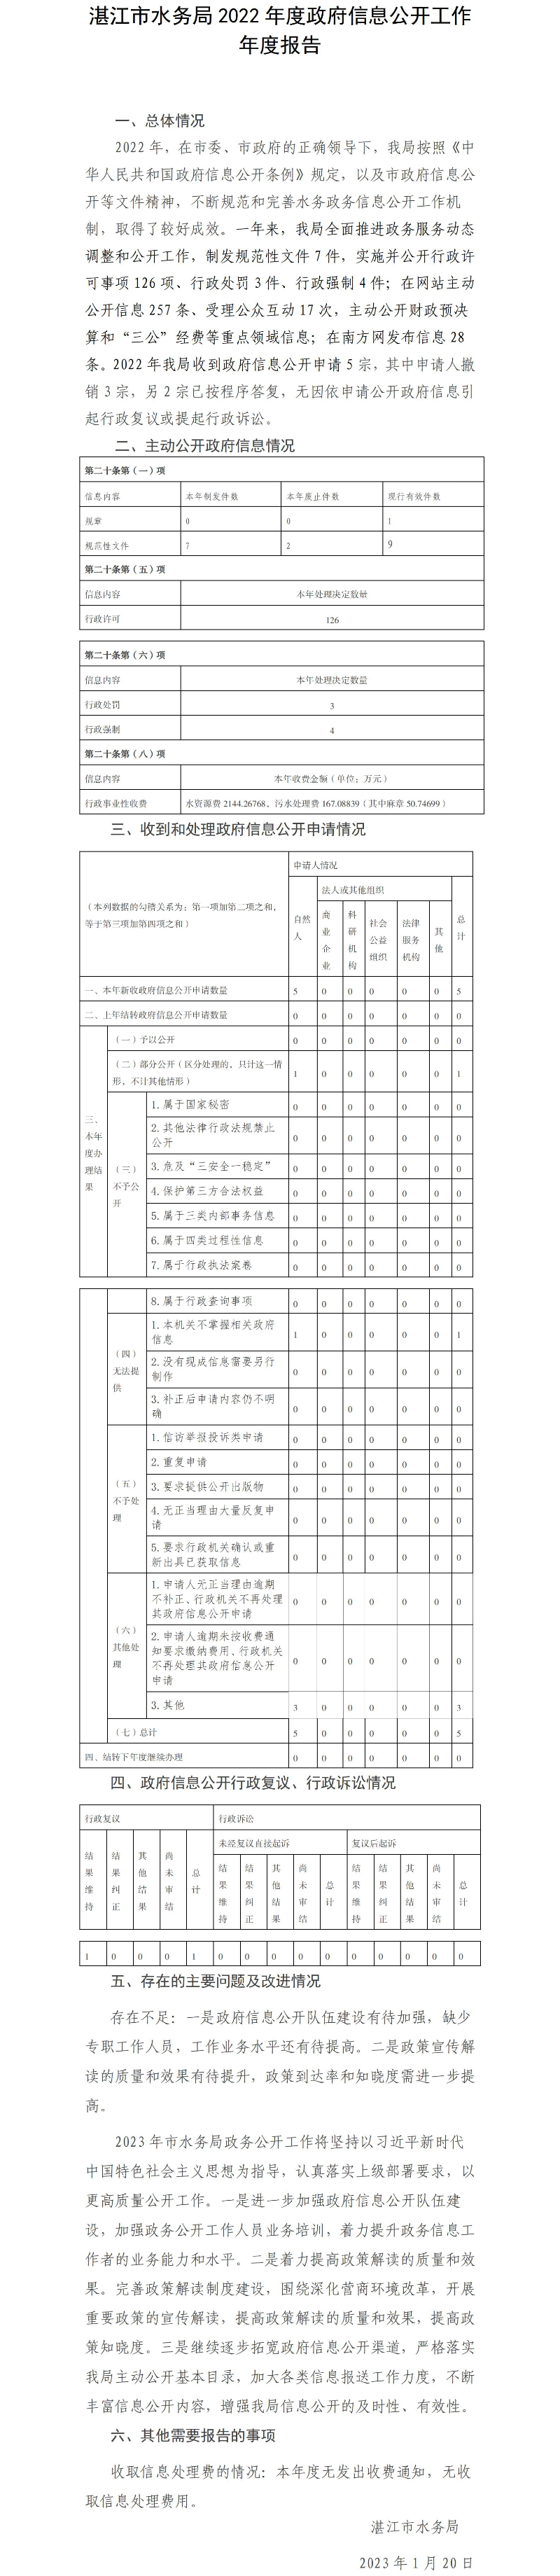 湛江市水务局2022年政府信息公开工作年度报告.jpg